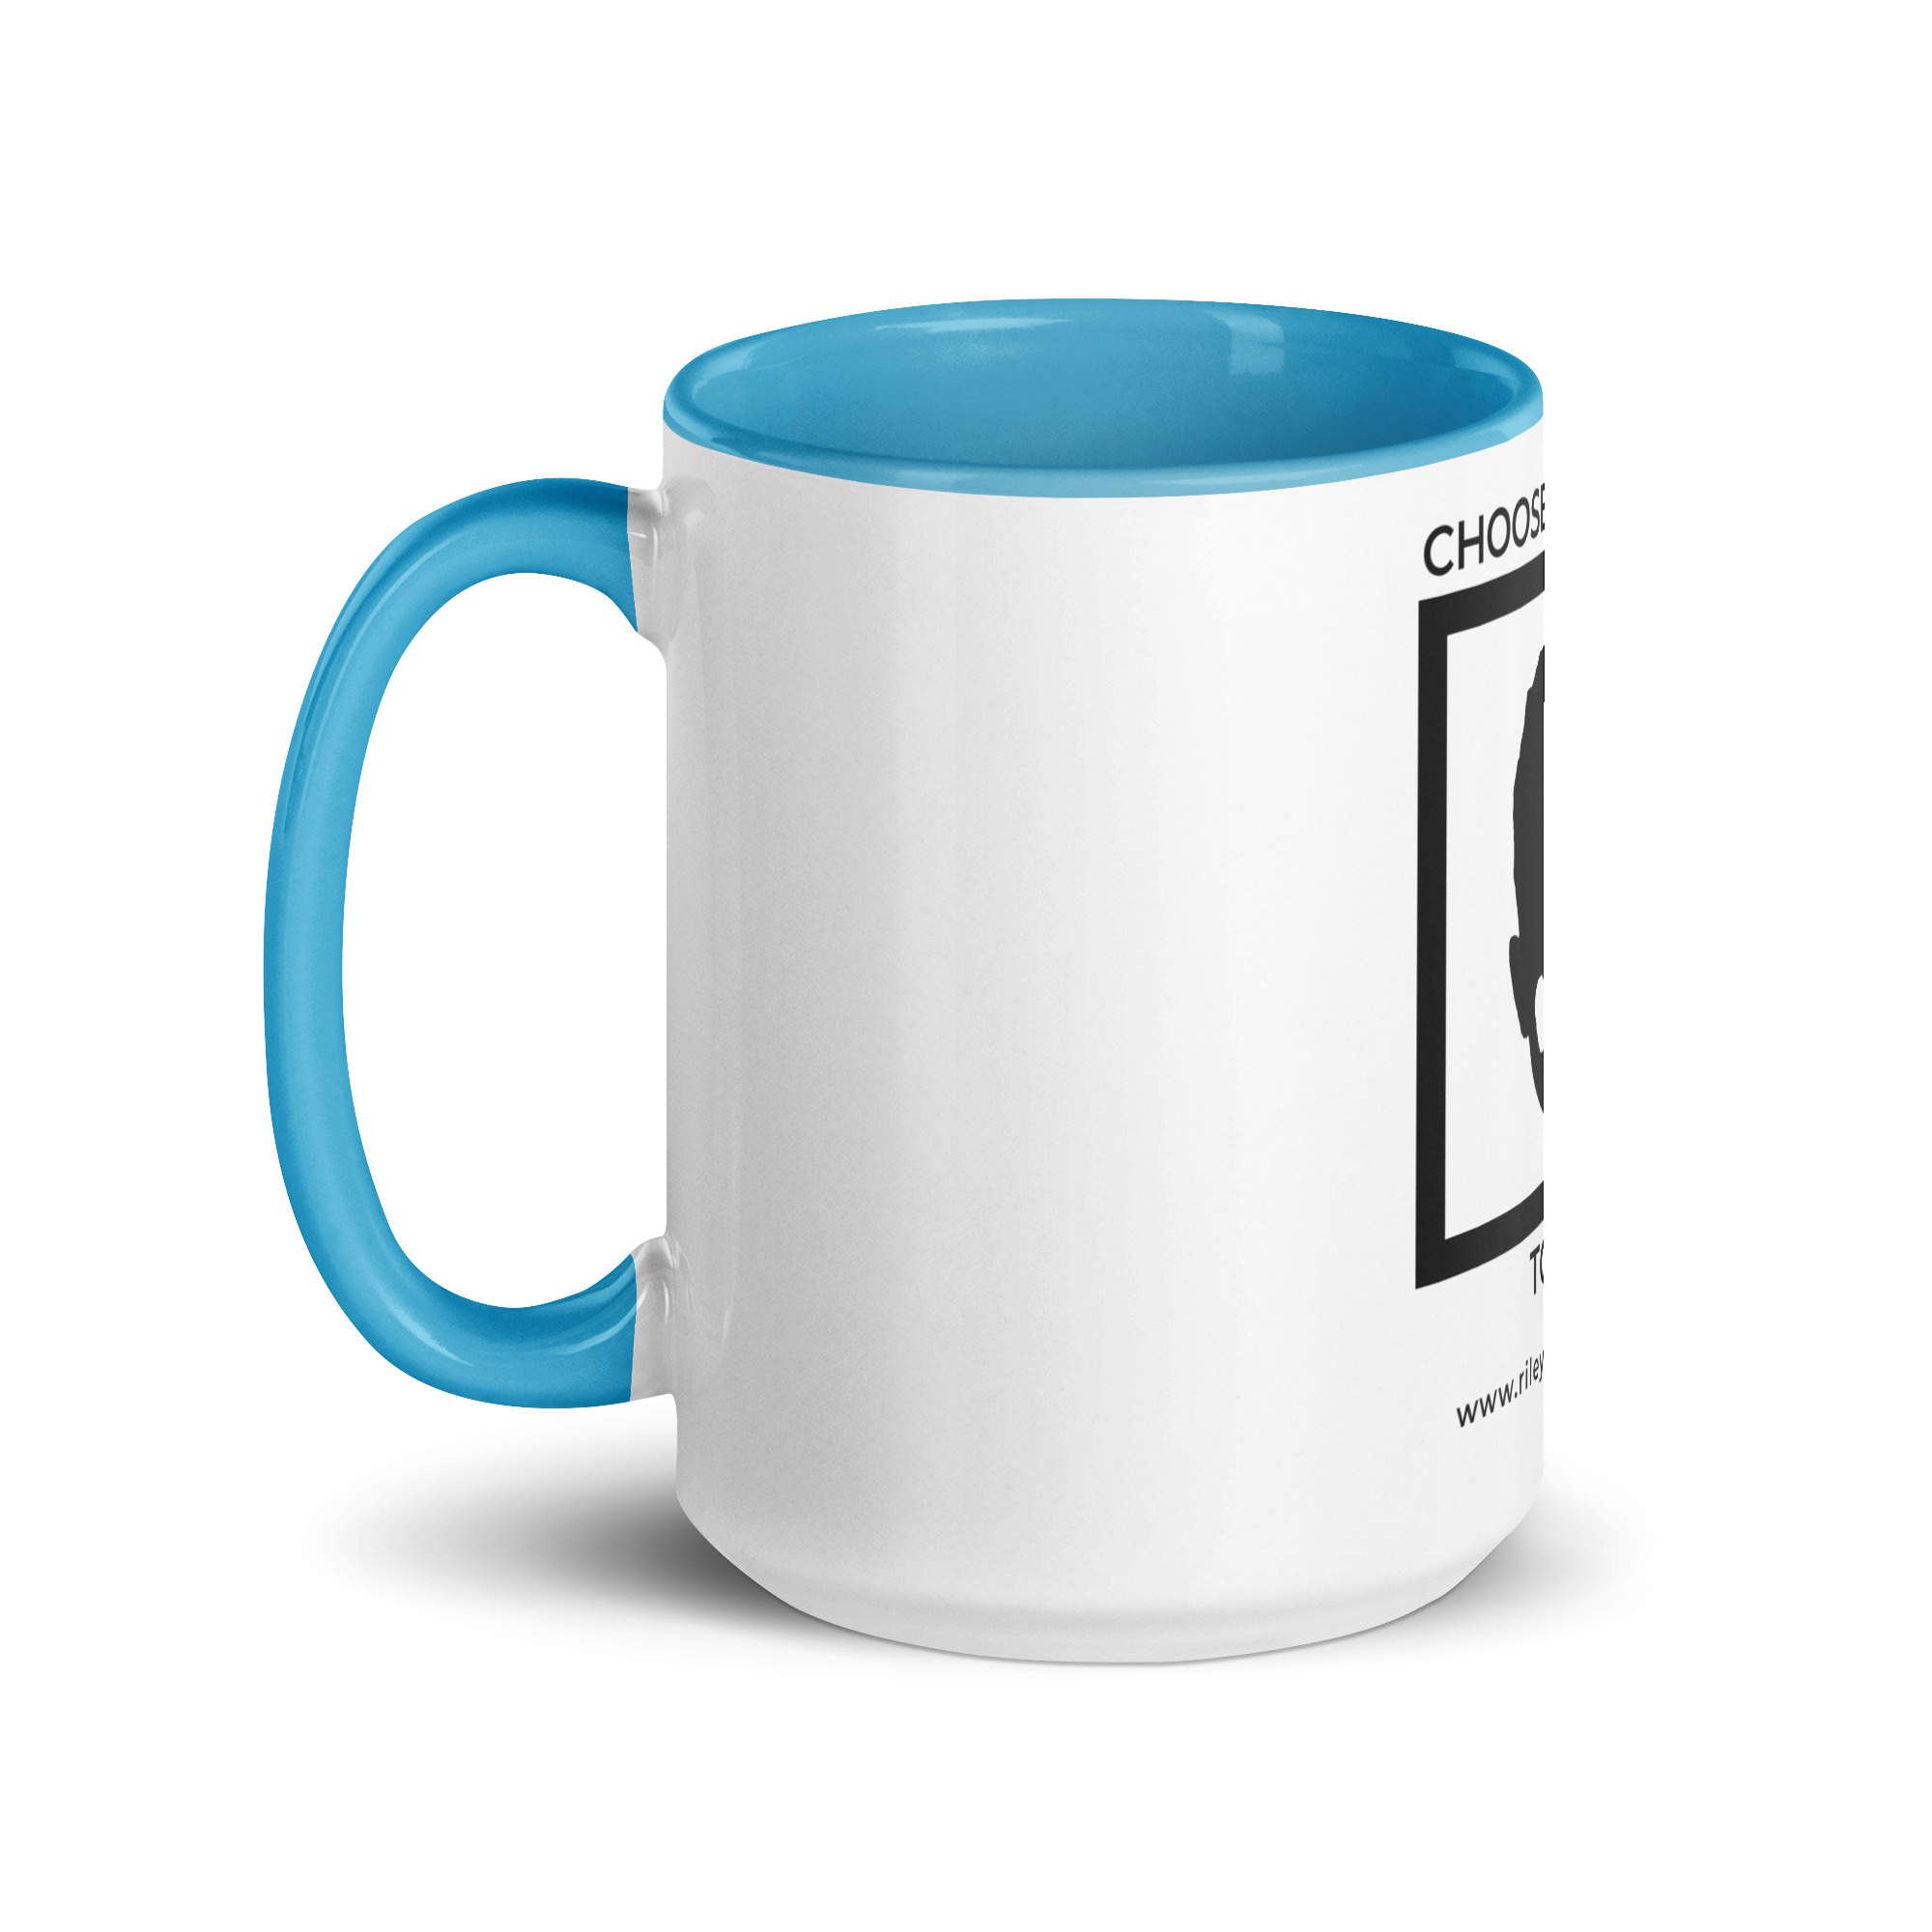 white-ceramic-mug-with-color-inside-blue-15-oz-left-6522a1a4041d9.jpg